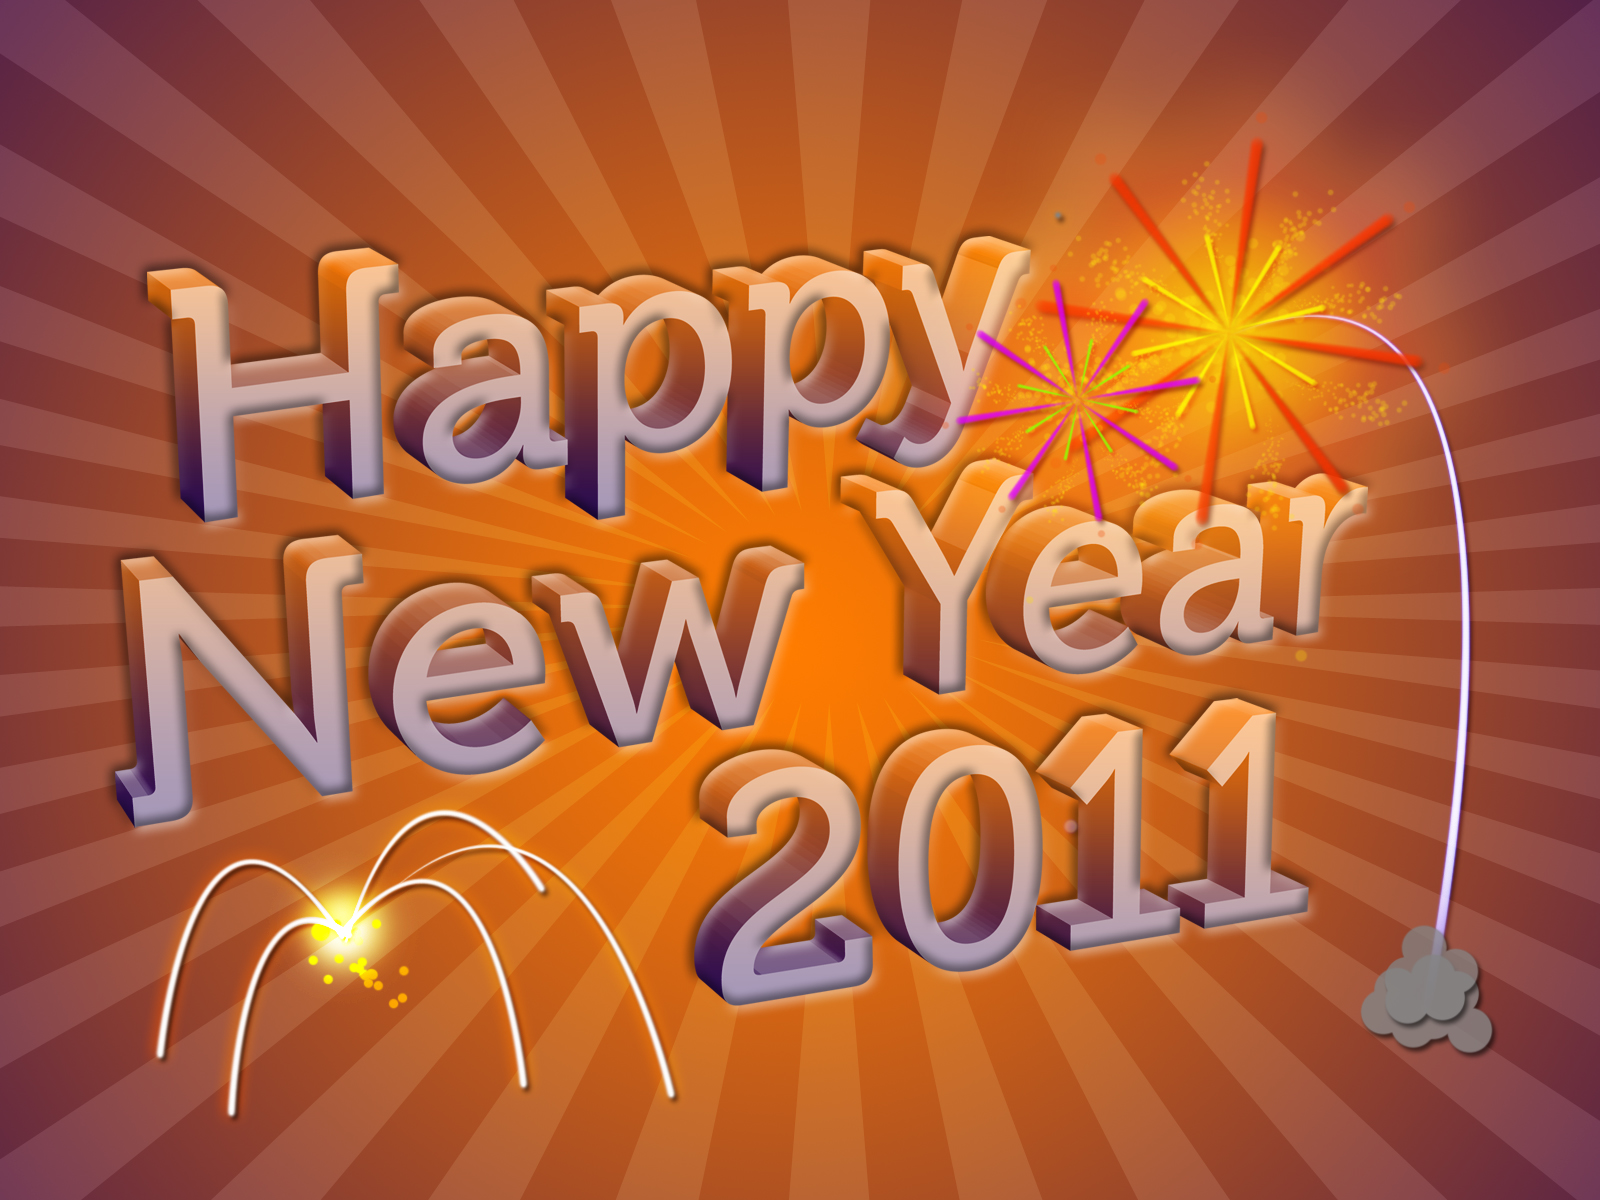 새해 복 많이 받으세요 벽지 다운로드,본문,폰트,설날,디 왈리,휴일